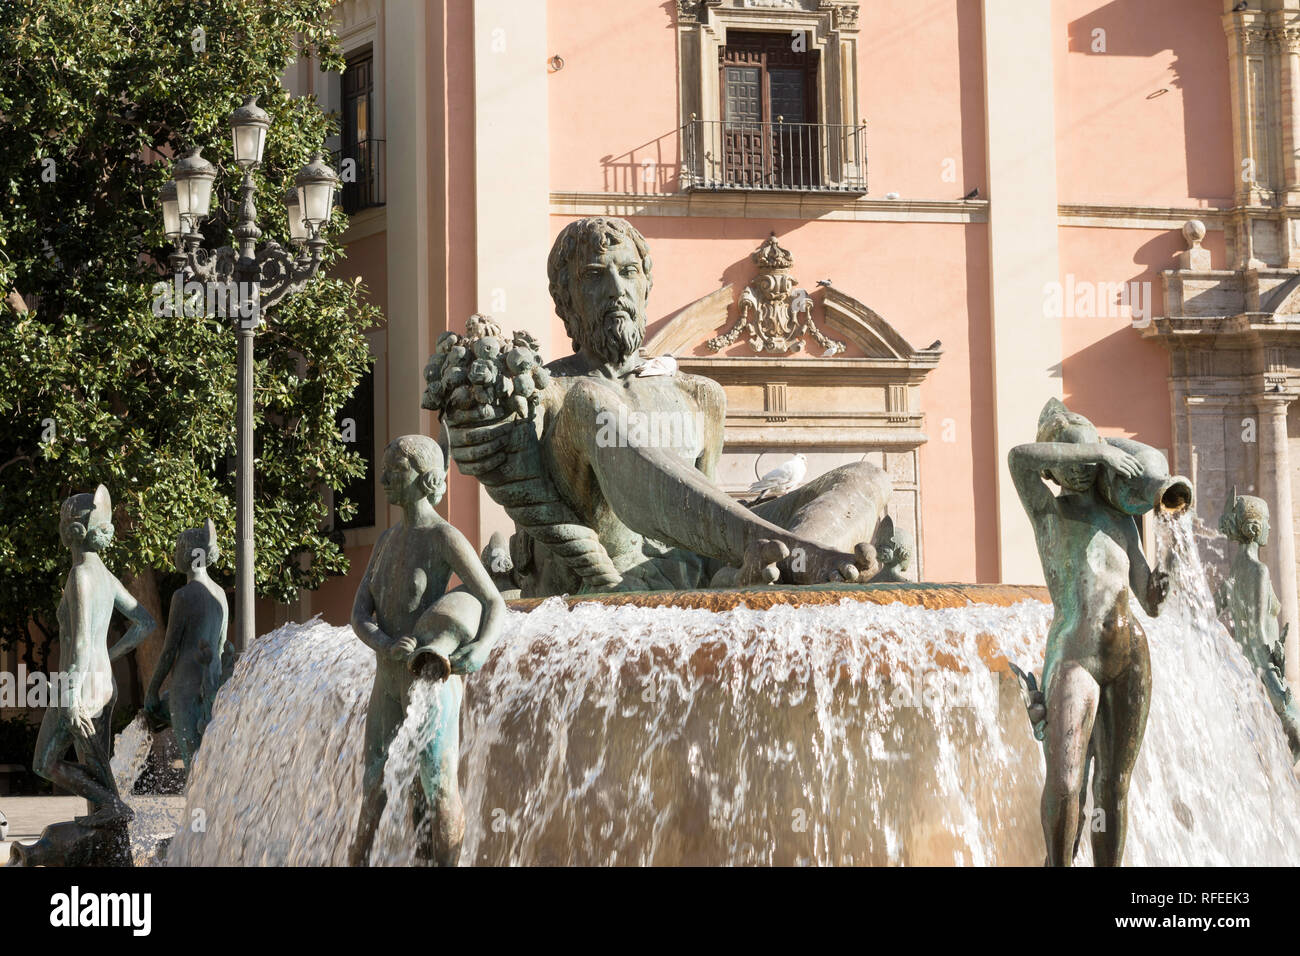 La fontaine de la Turia dans la Plaza de la Virgen, Valencia, Spain, Europe Banque D'Images